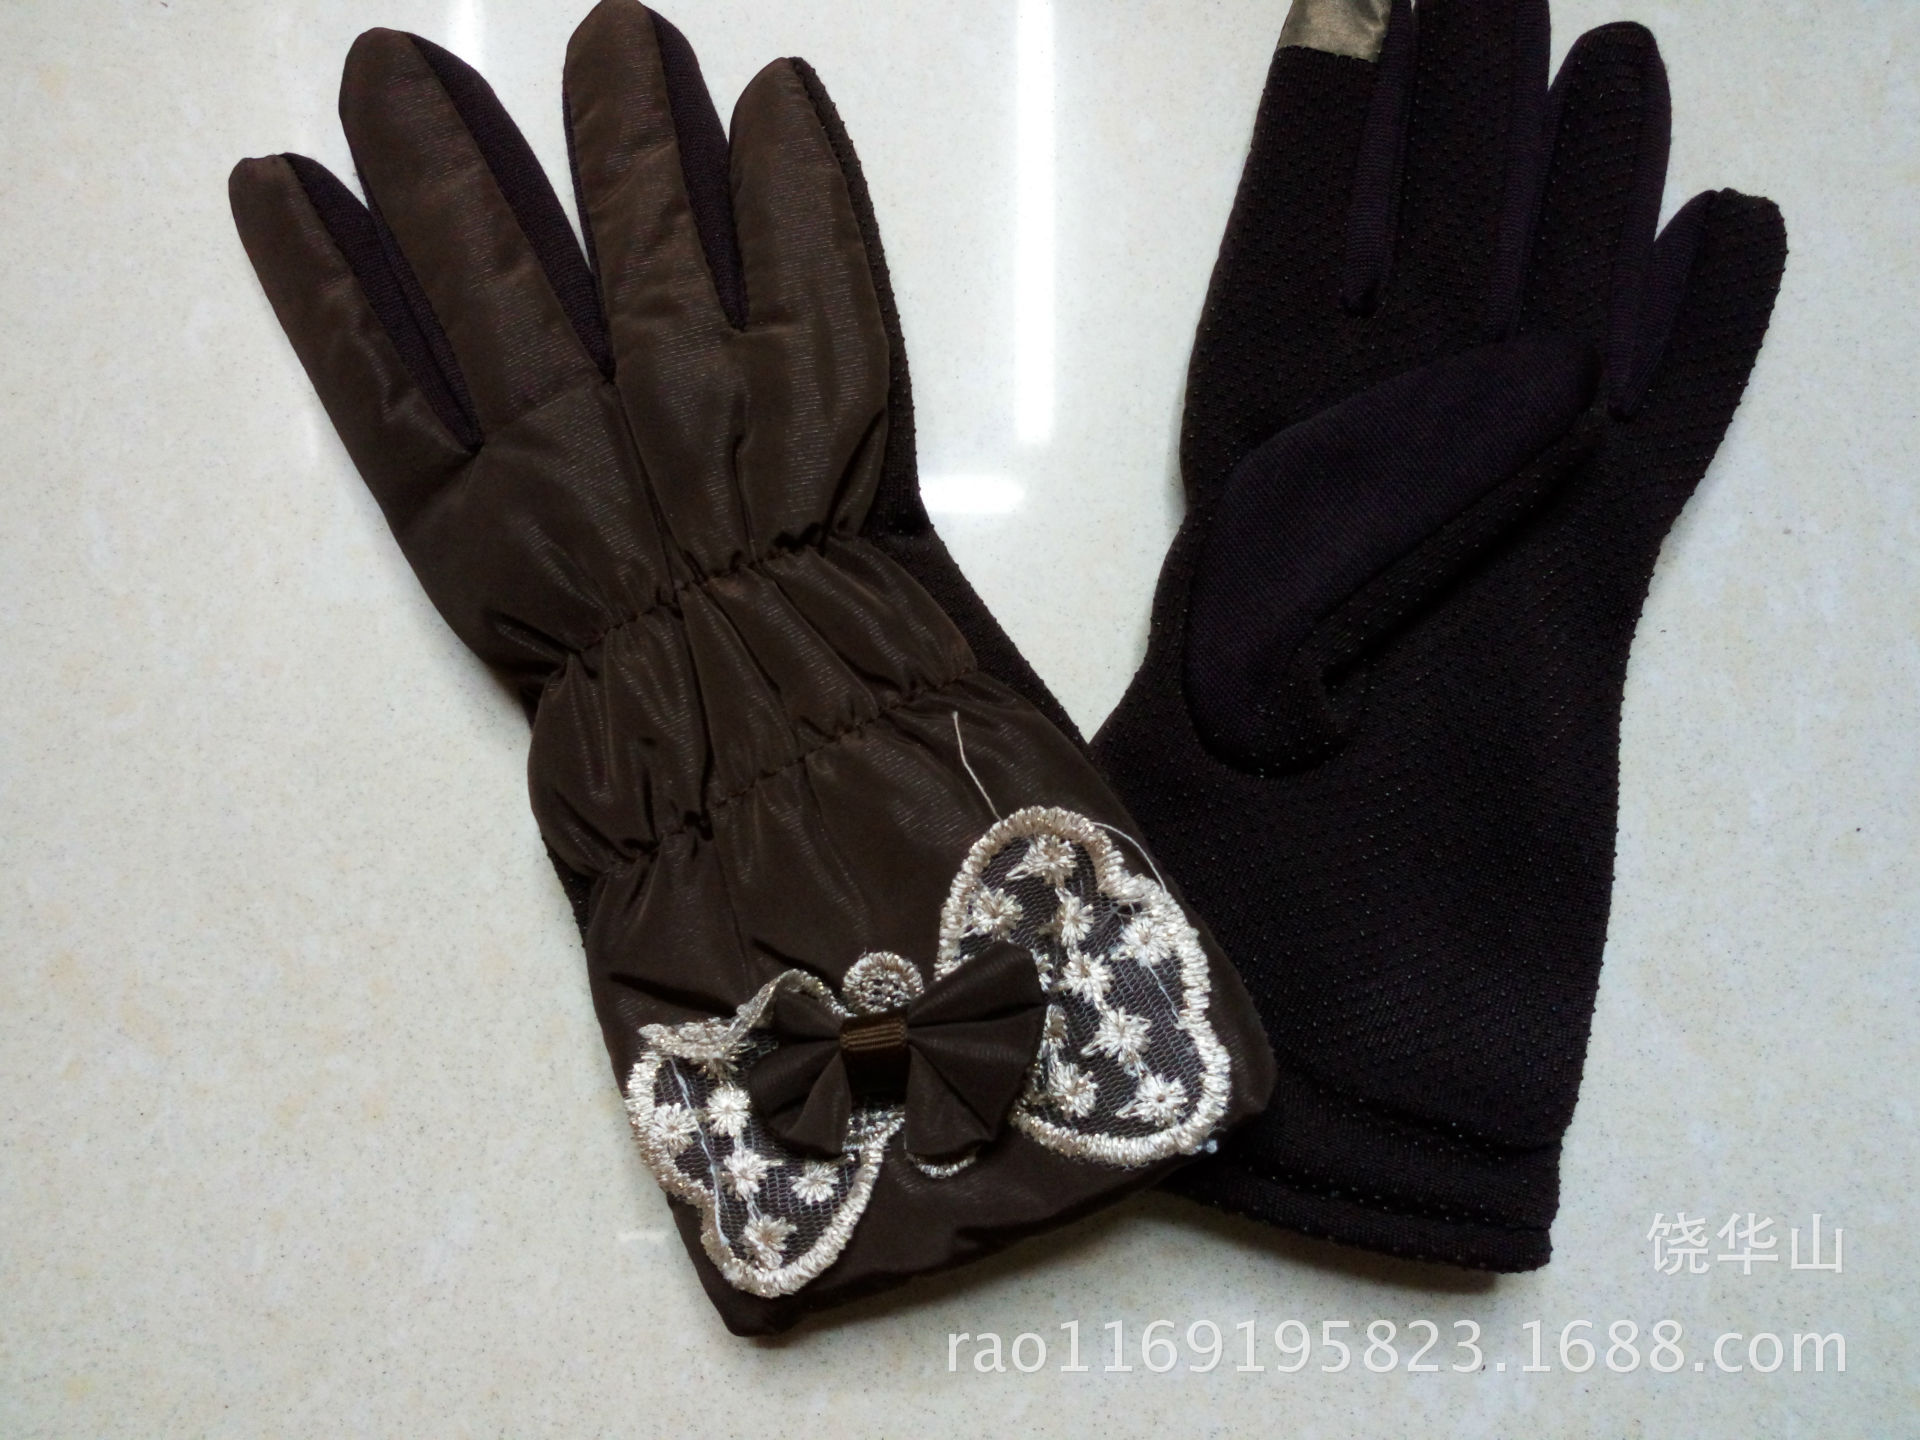 2015 winter warm gloves IMG_20150809_122333